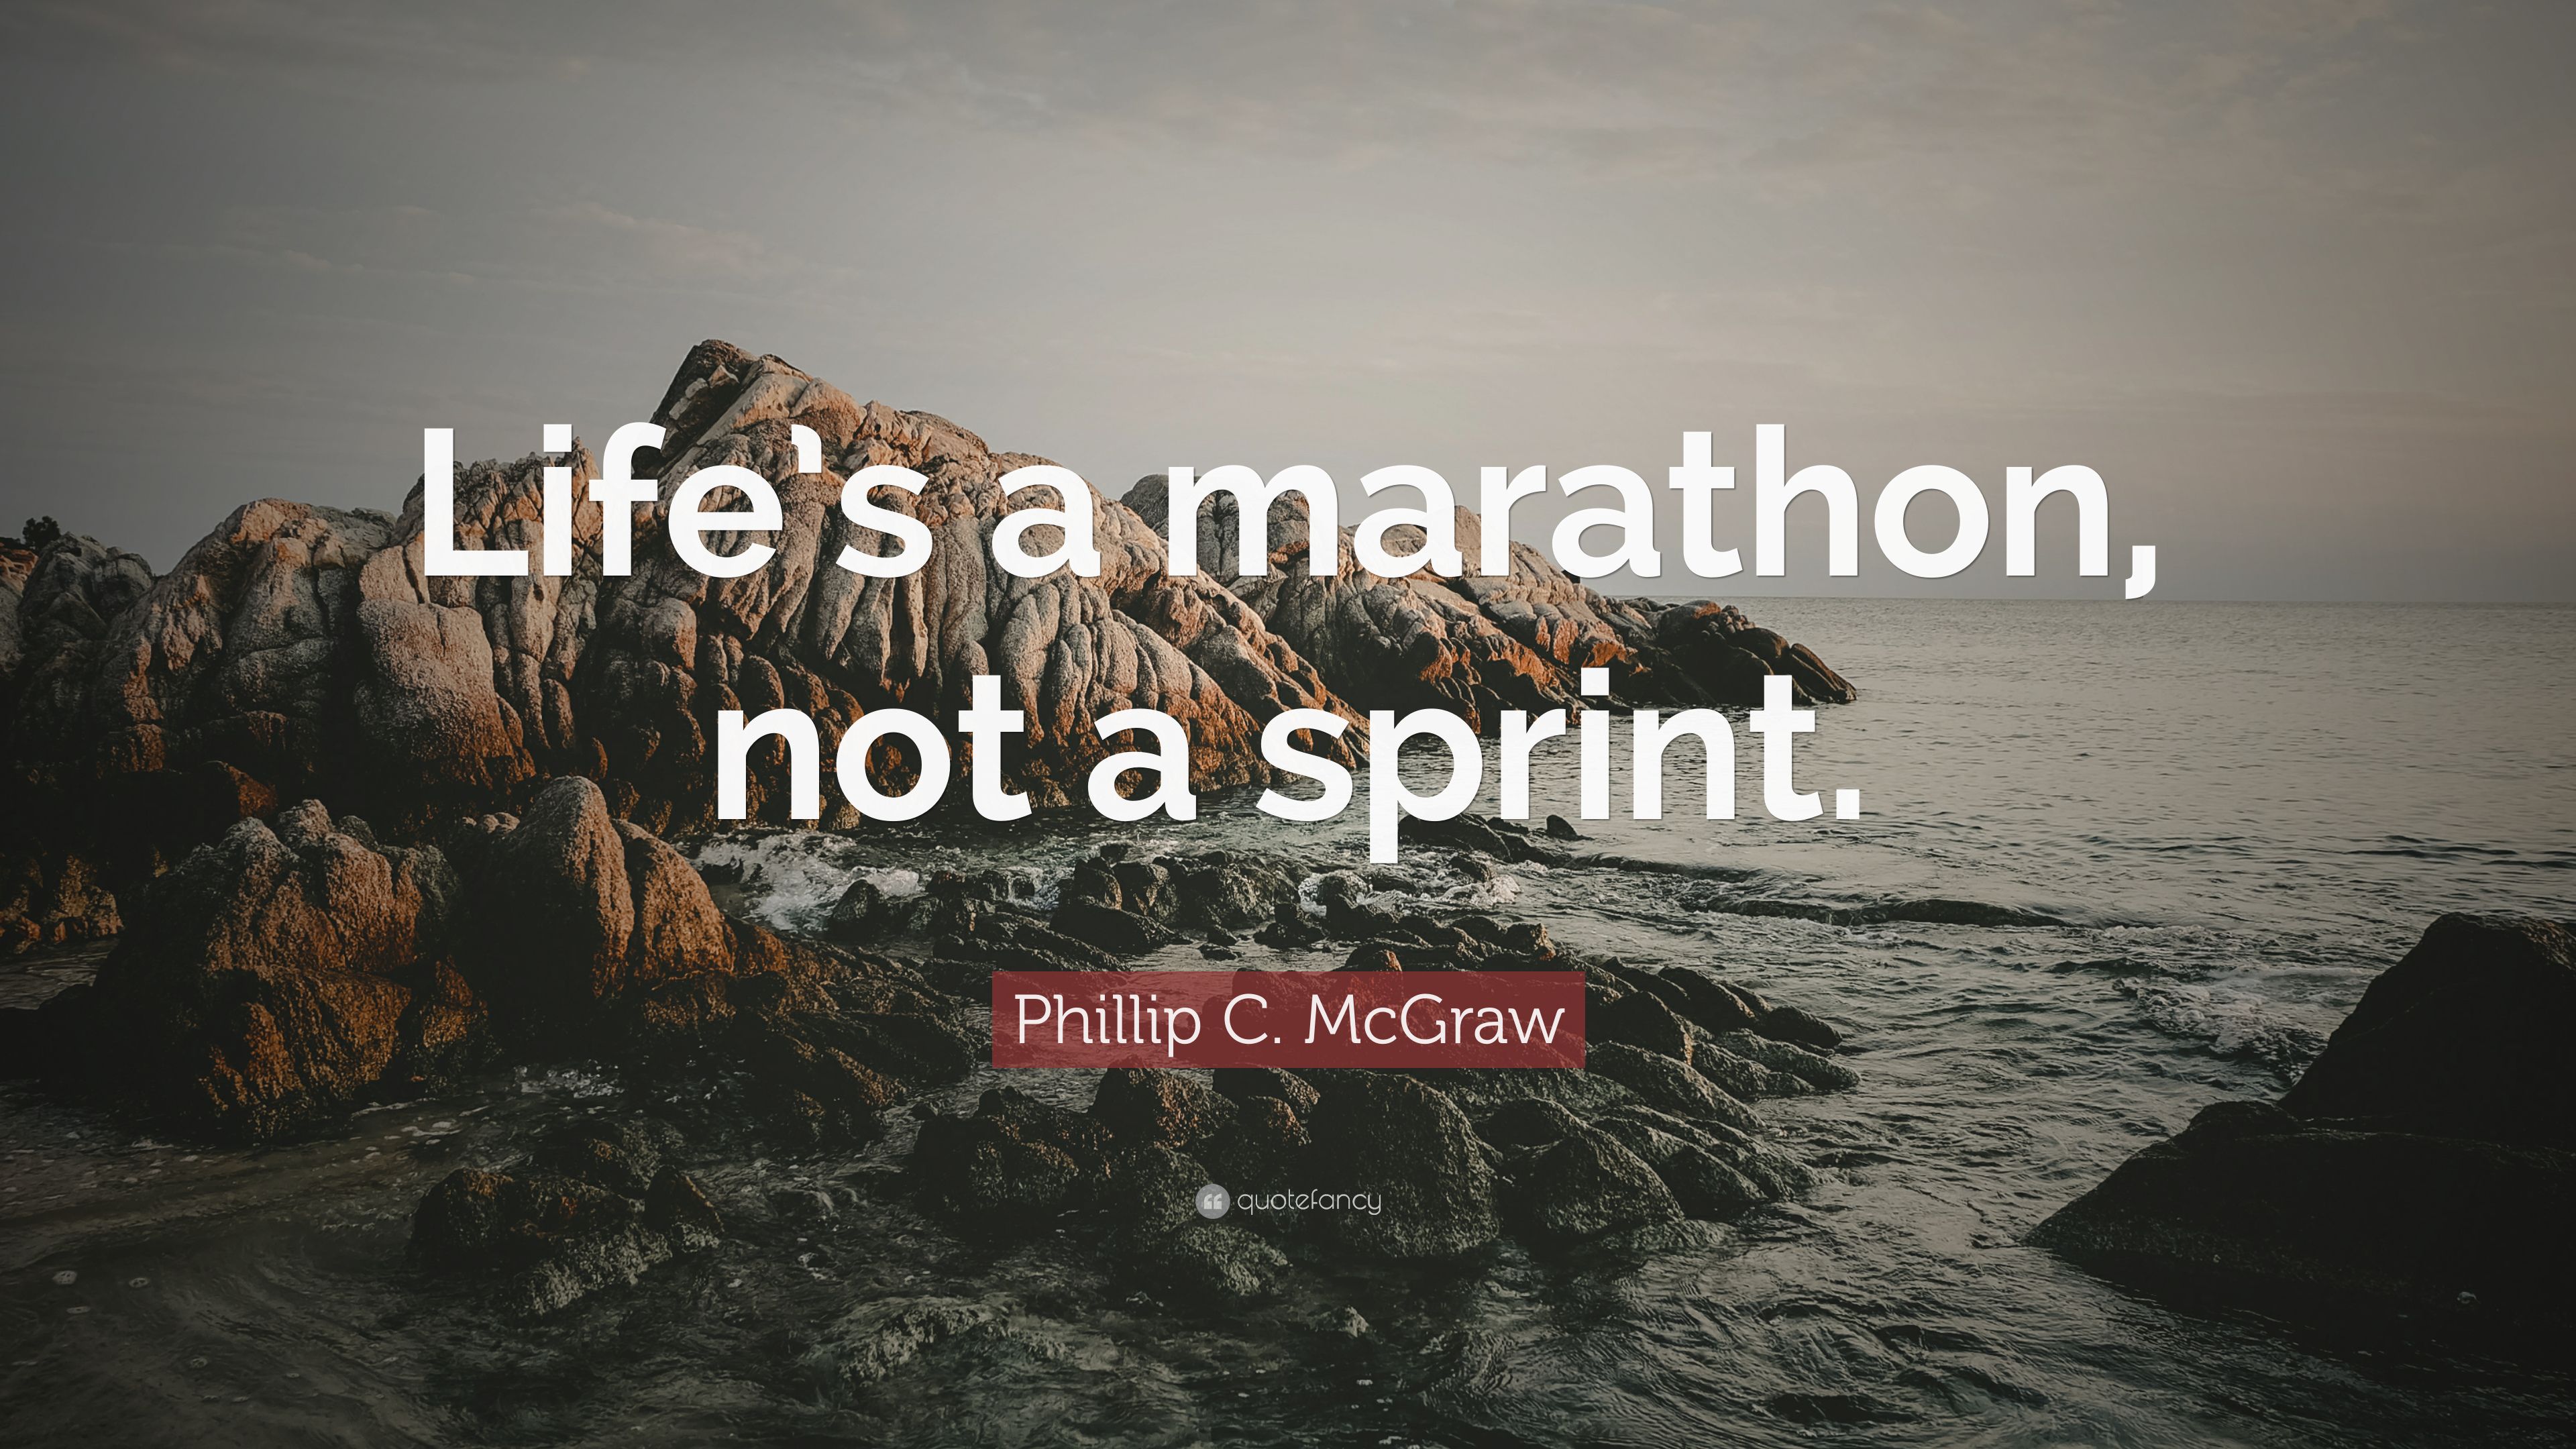 Phillip C. McGraw Quote: “Life's a marathon, not a sprint.” 9